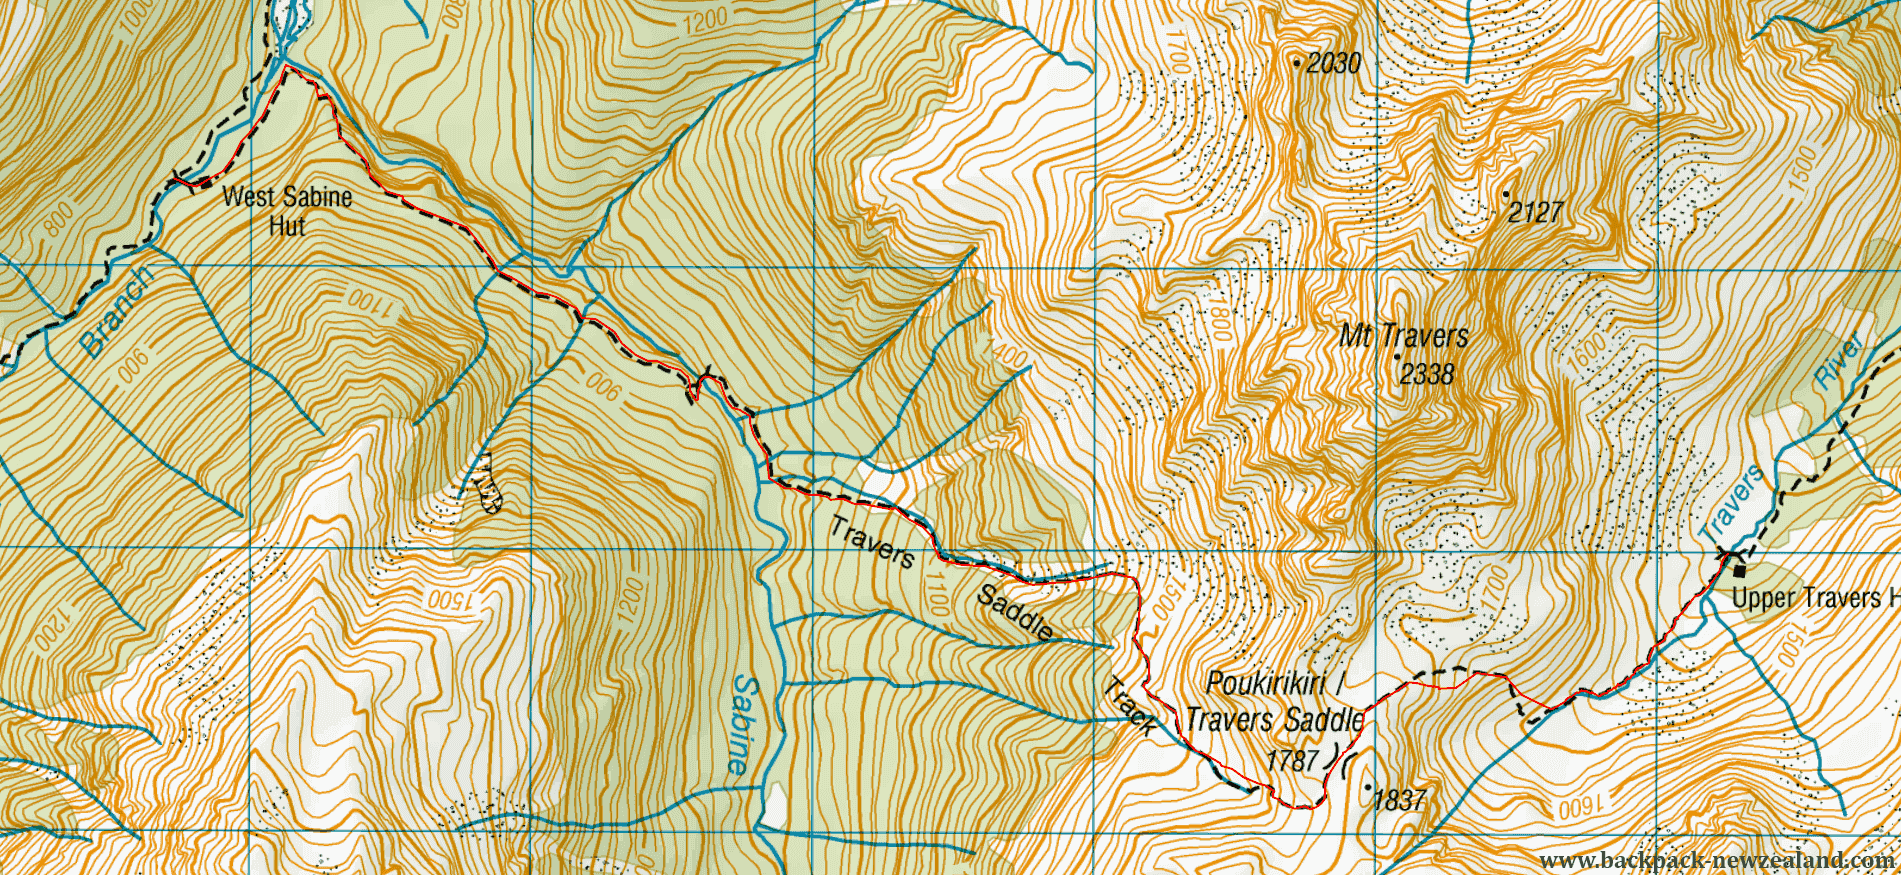 Travers Saddle Track Map - New Zealand Tracks